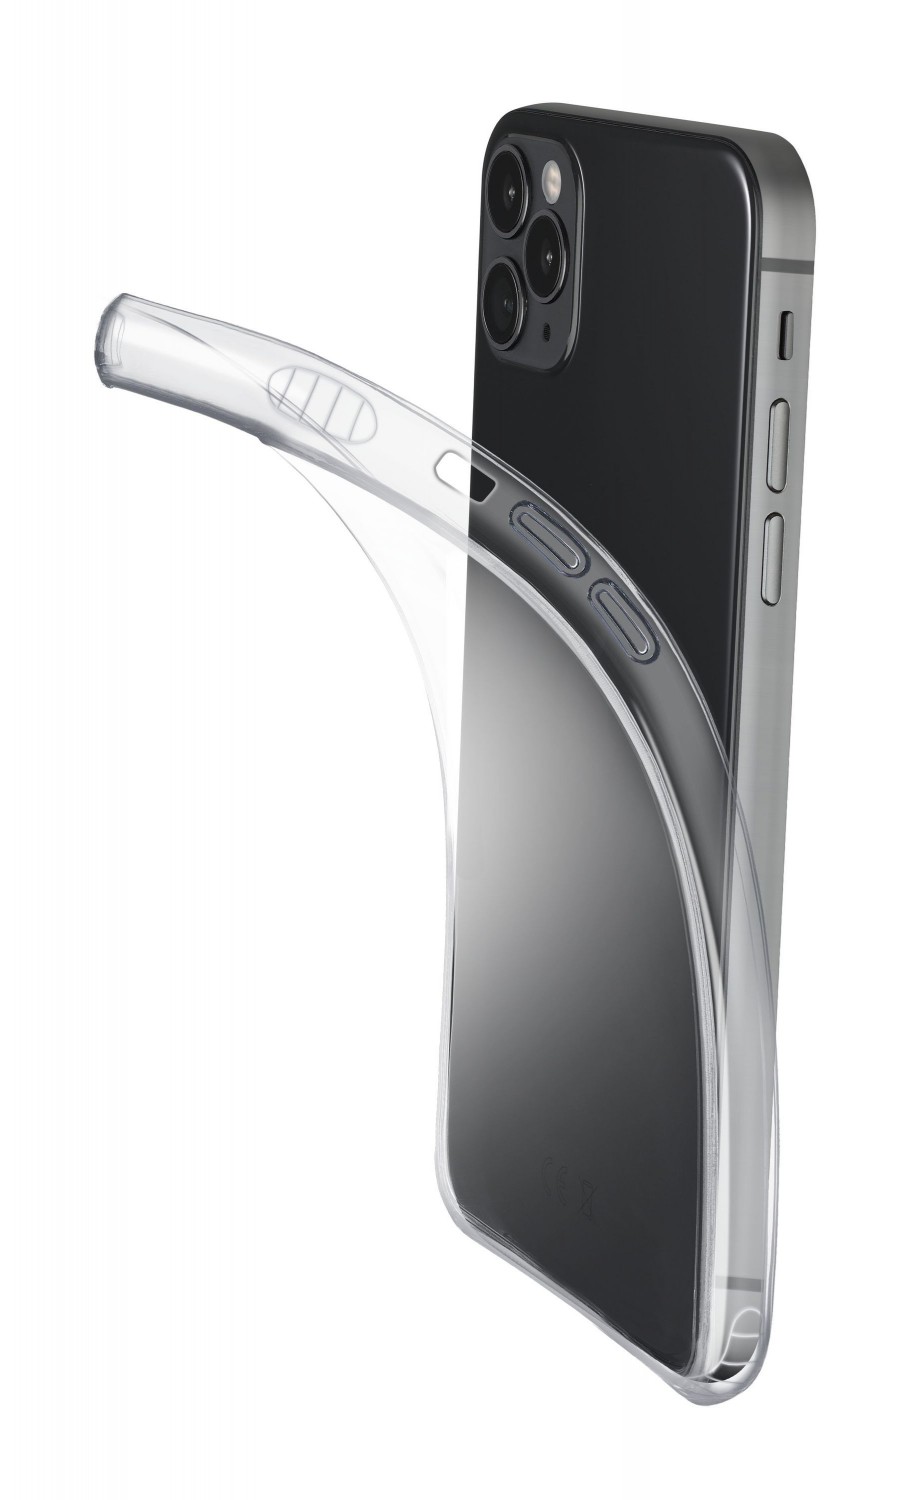 Cellularline Fine extratenký zadní kryt Apple iPhone 12/12 Pro transparent